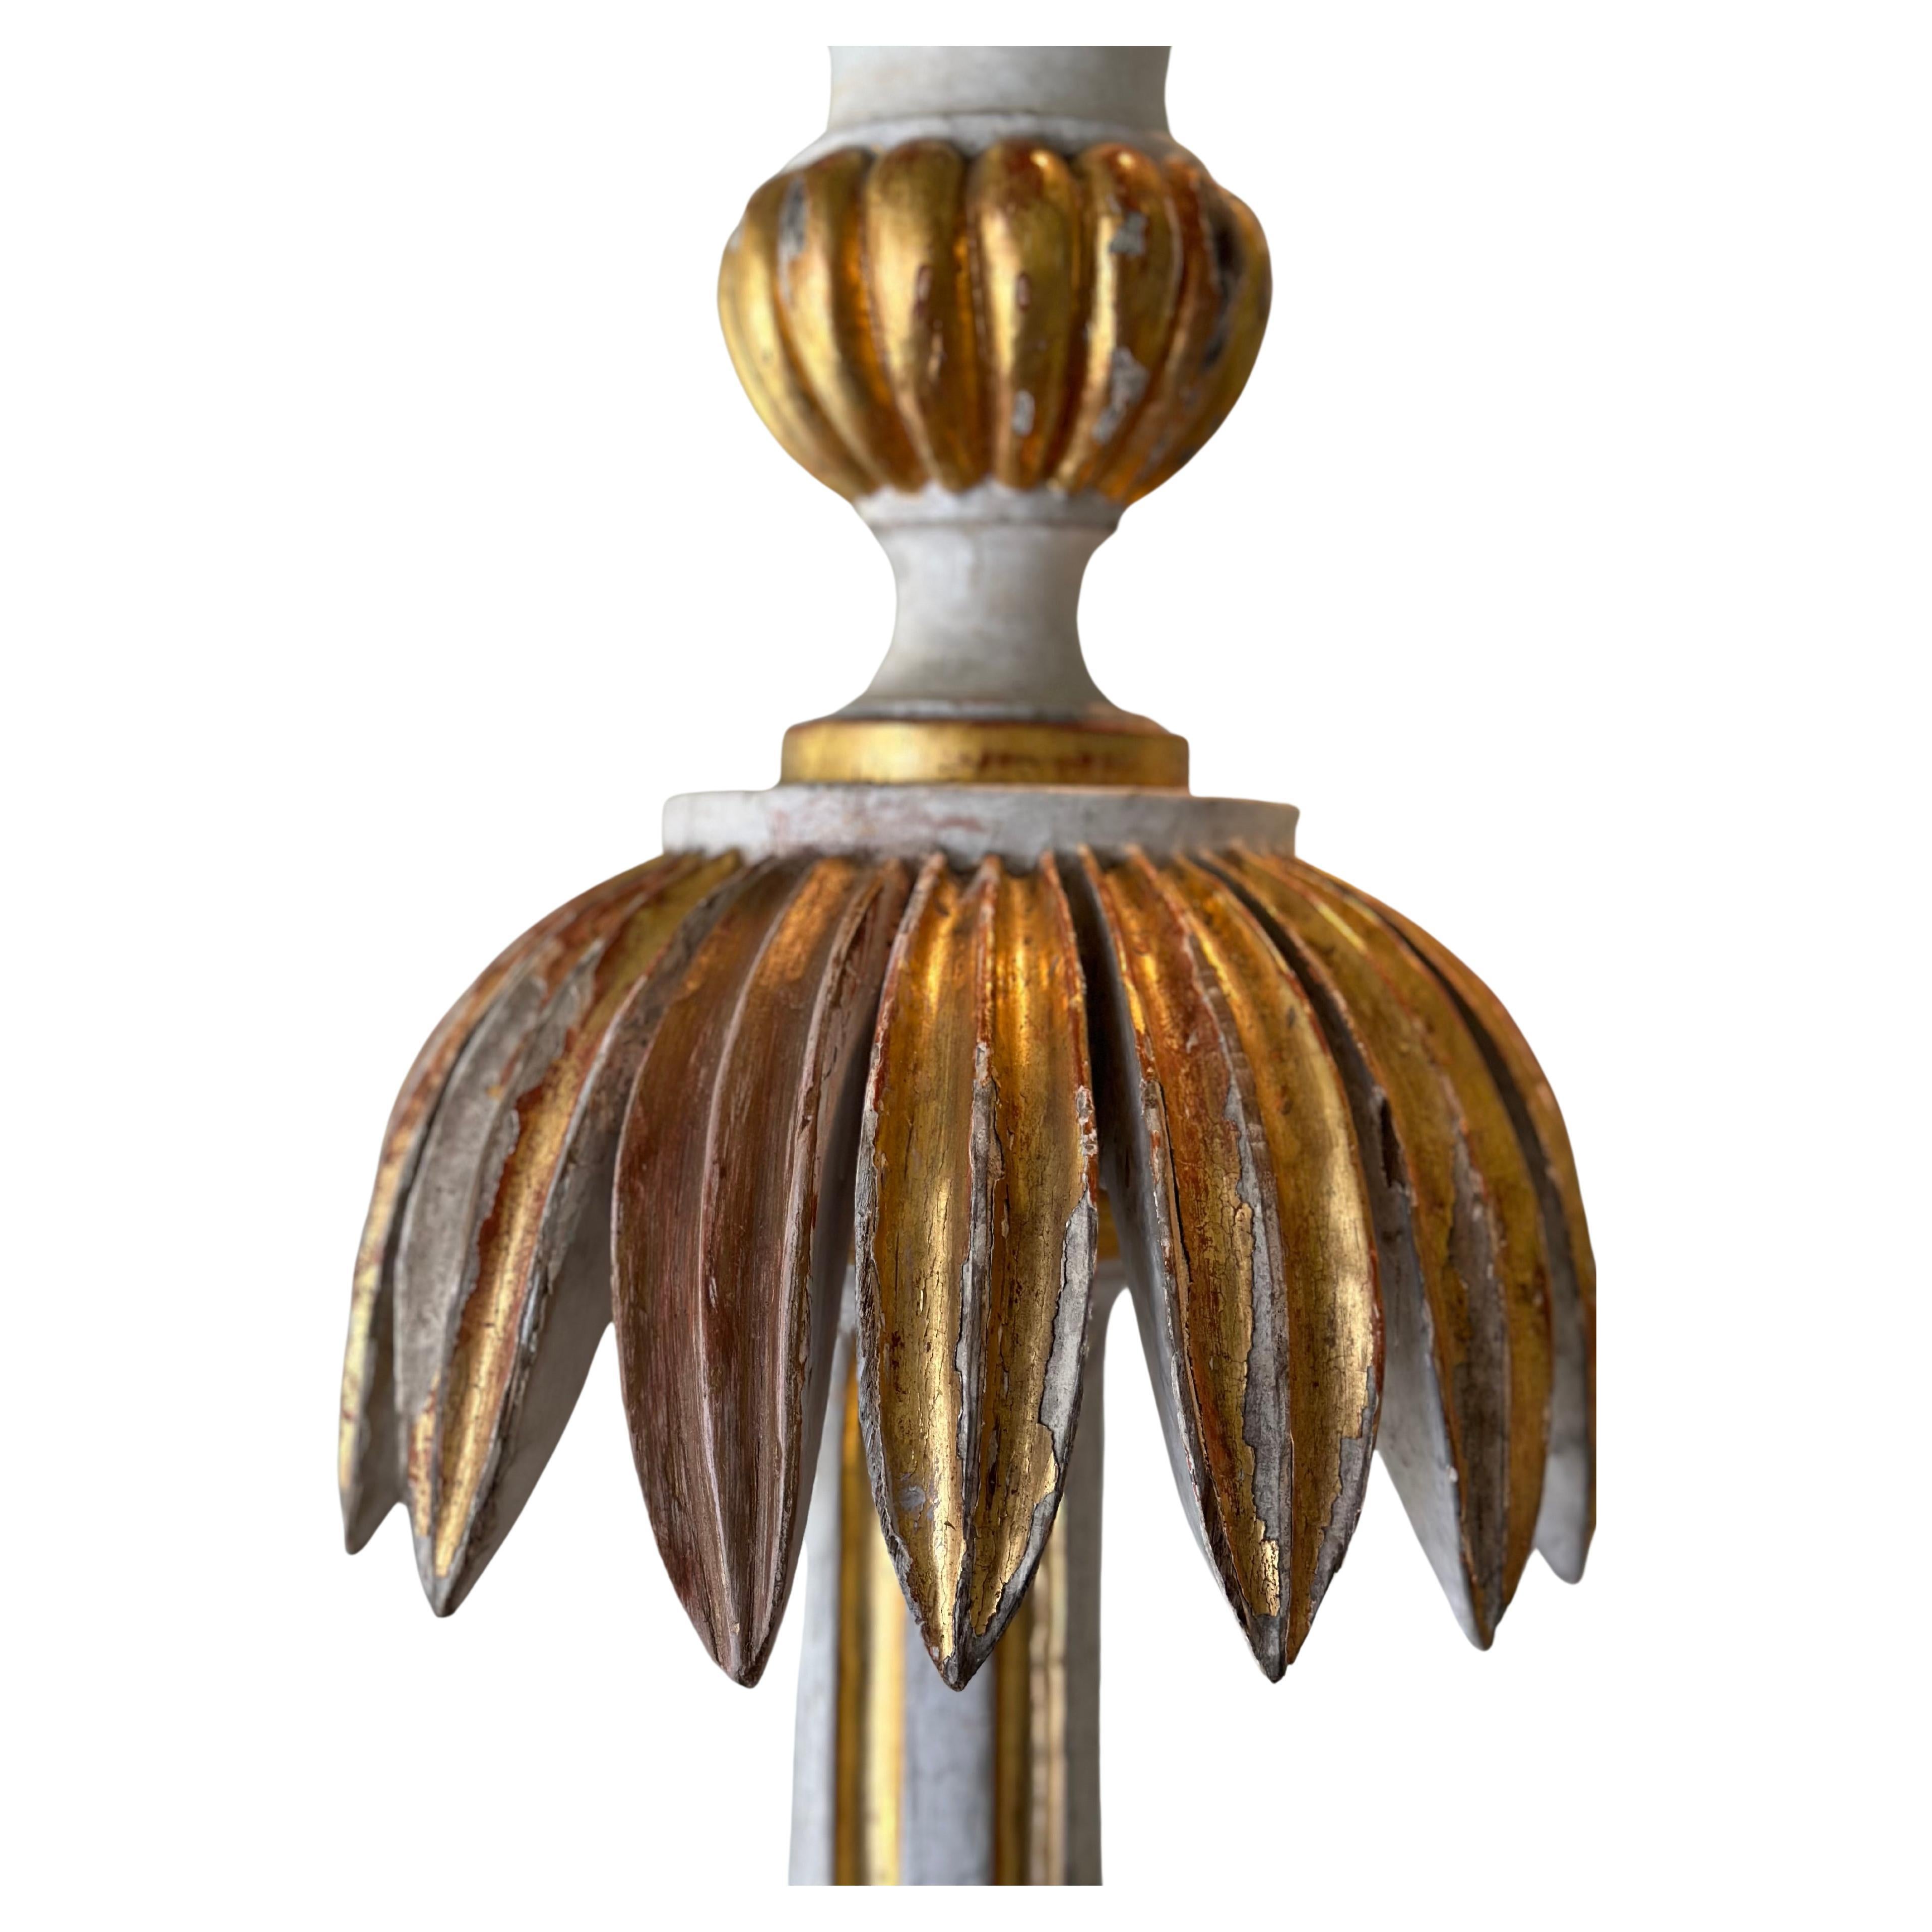 Lampadaires sculptés et dorés - Italie c1820